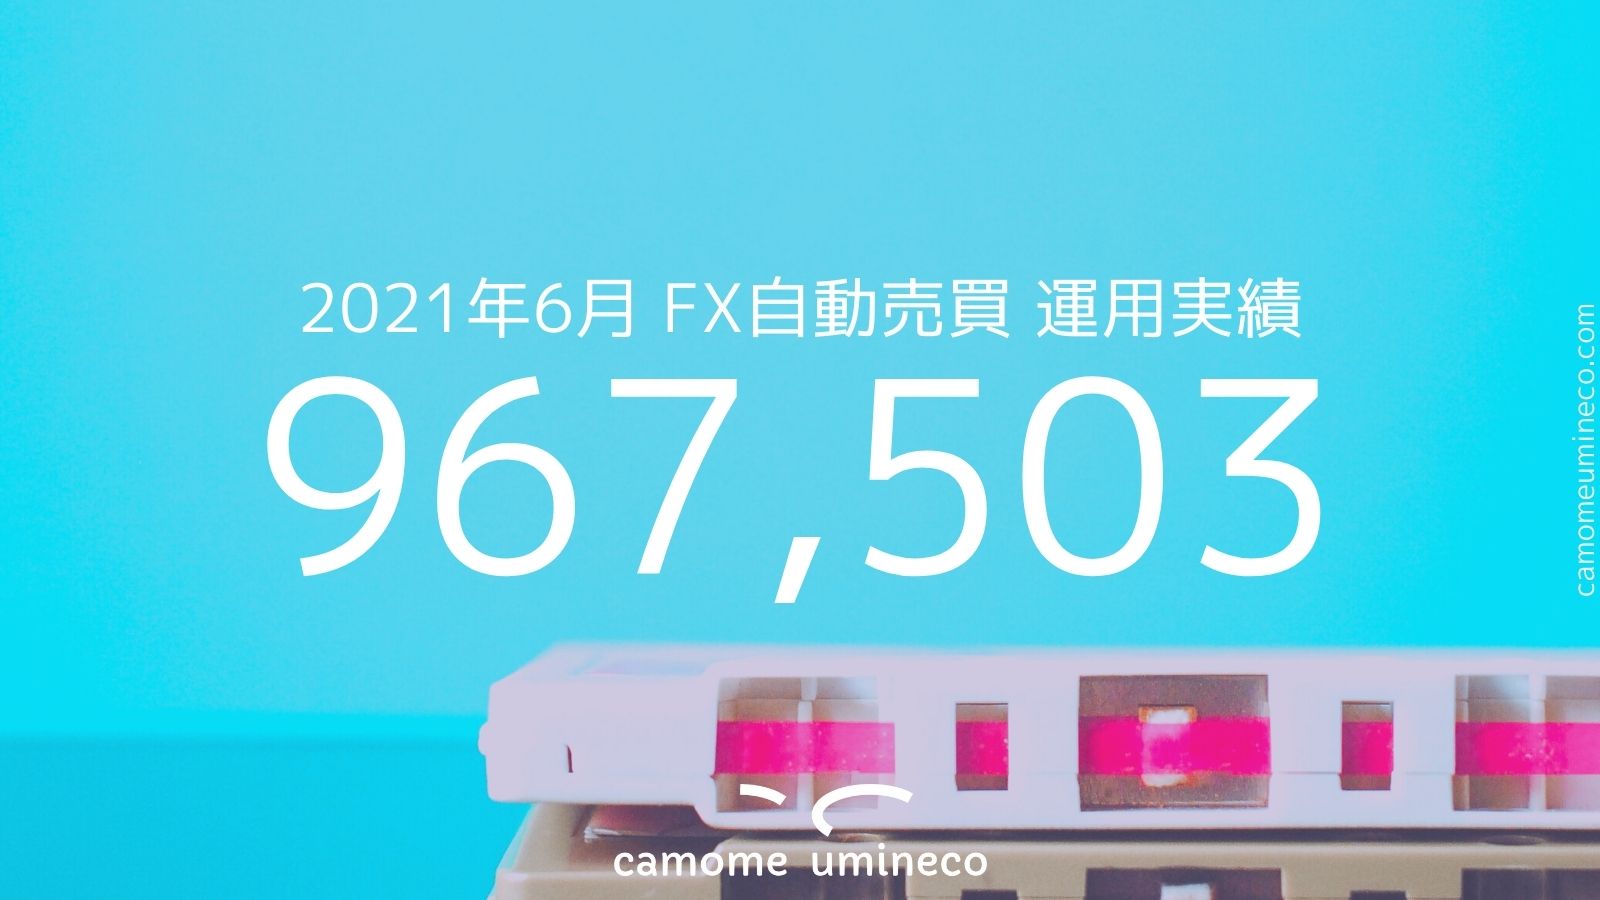 【トライオートFX】2021年6月 運用実績 967,503円